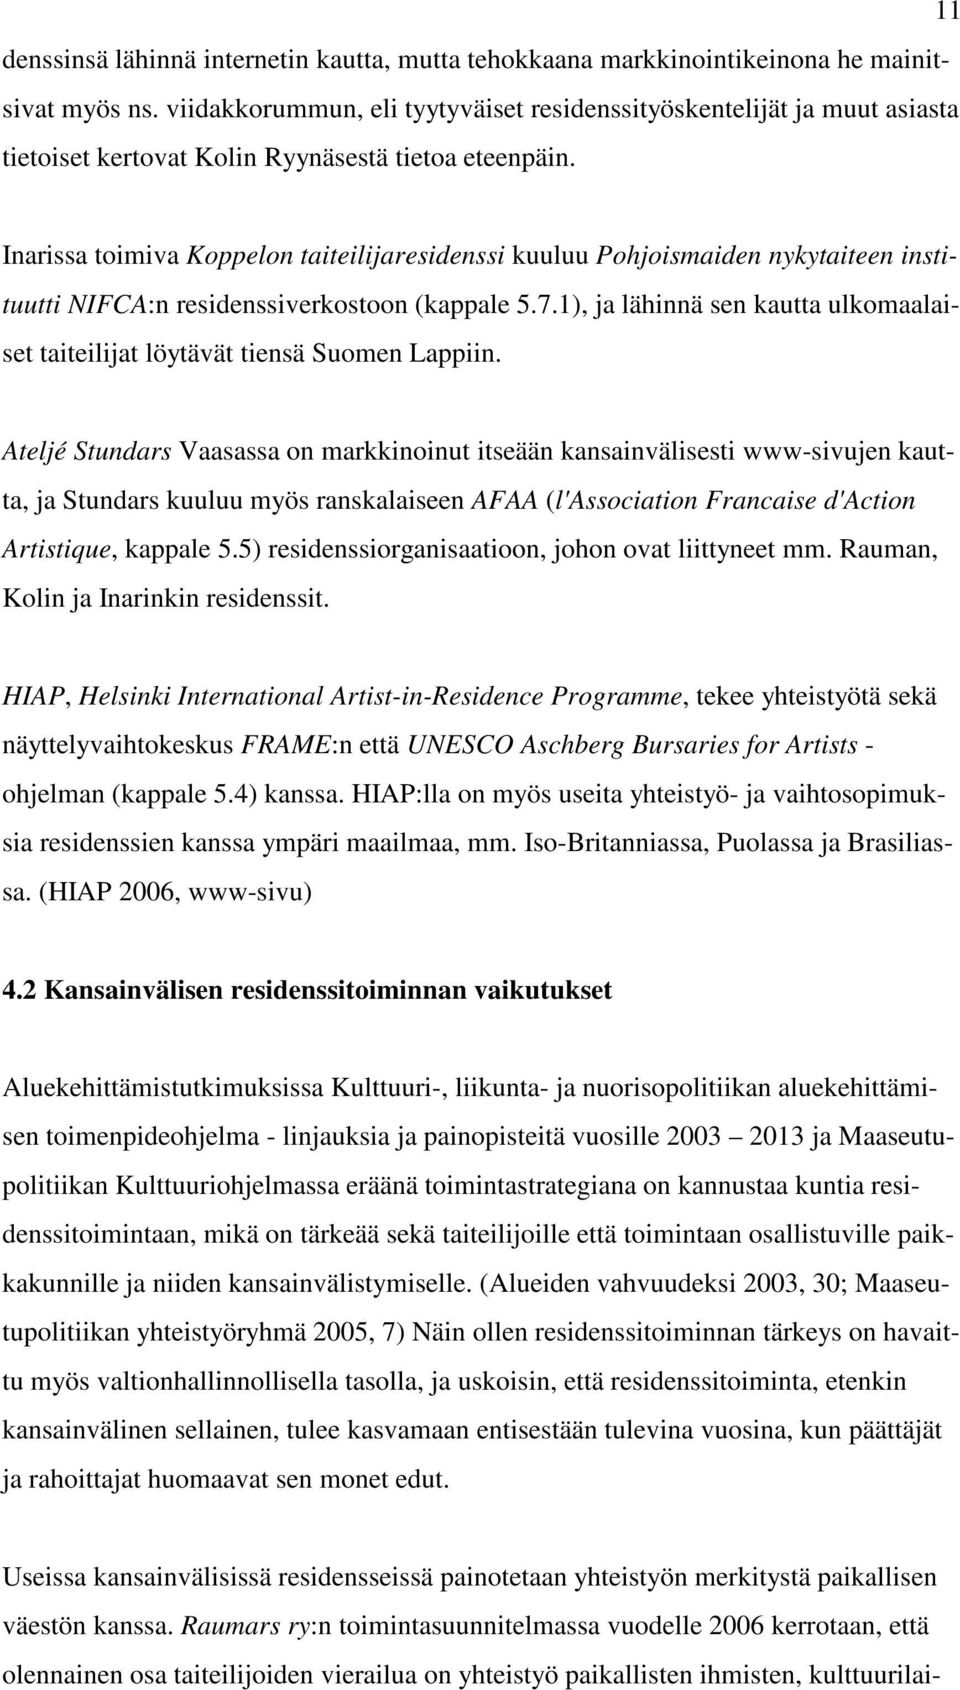 Inarissa toimiva Koppelon taiteilijaresidenssi kuuluu Pohjoismaiden nykytaiteen instituutti NIFCA:n residenssiverkostoon (kappale 5.7.